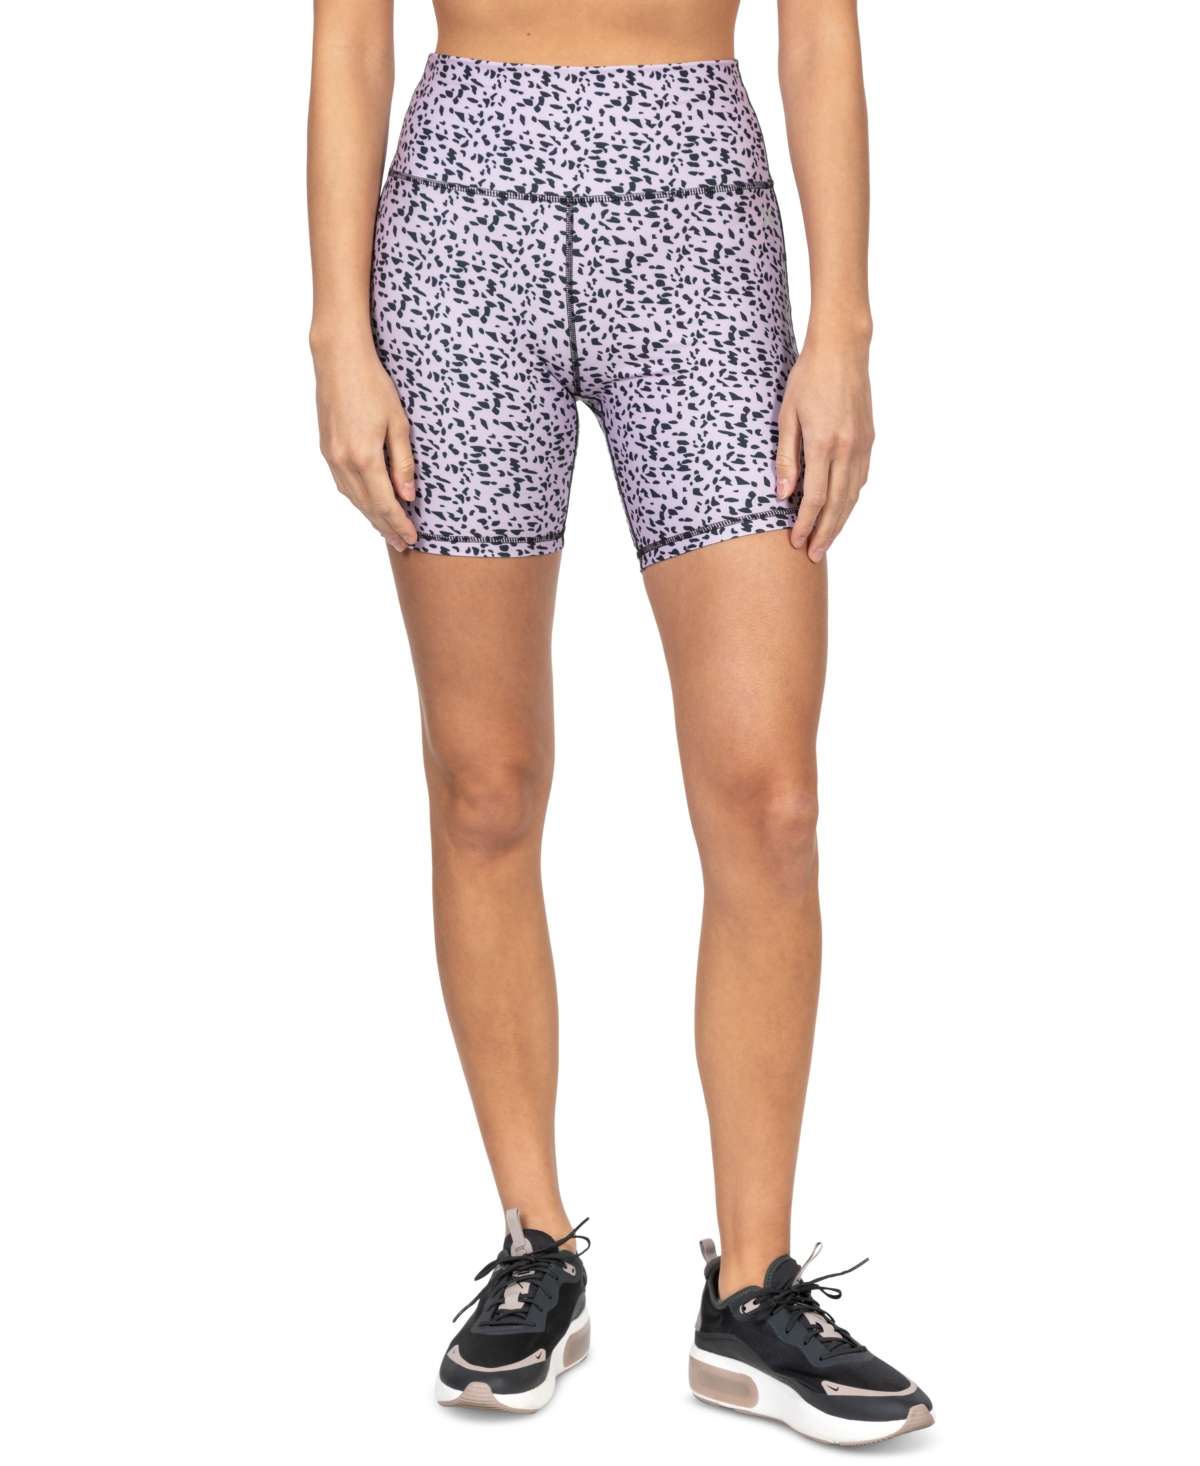 Wissen Betrokken Ziekte Hurley Juniors' Printed High Waist Bike Shorts | Smart Closet